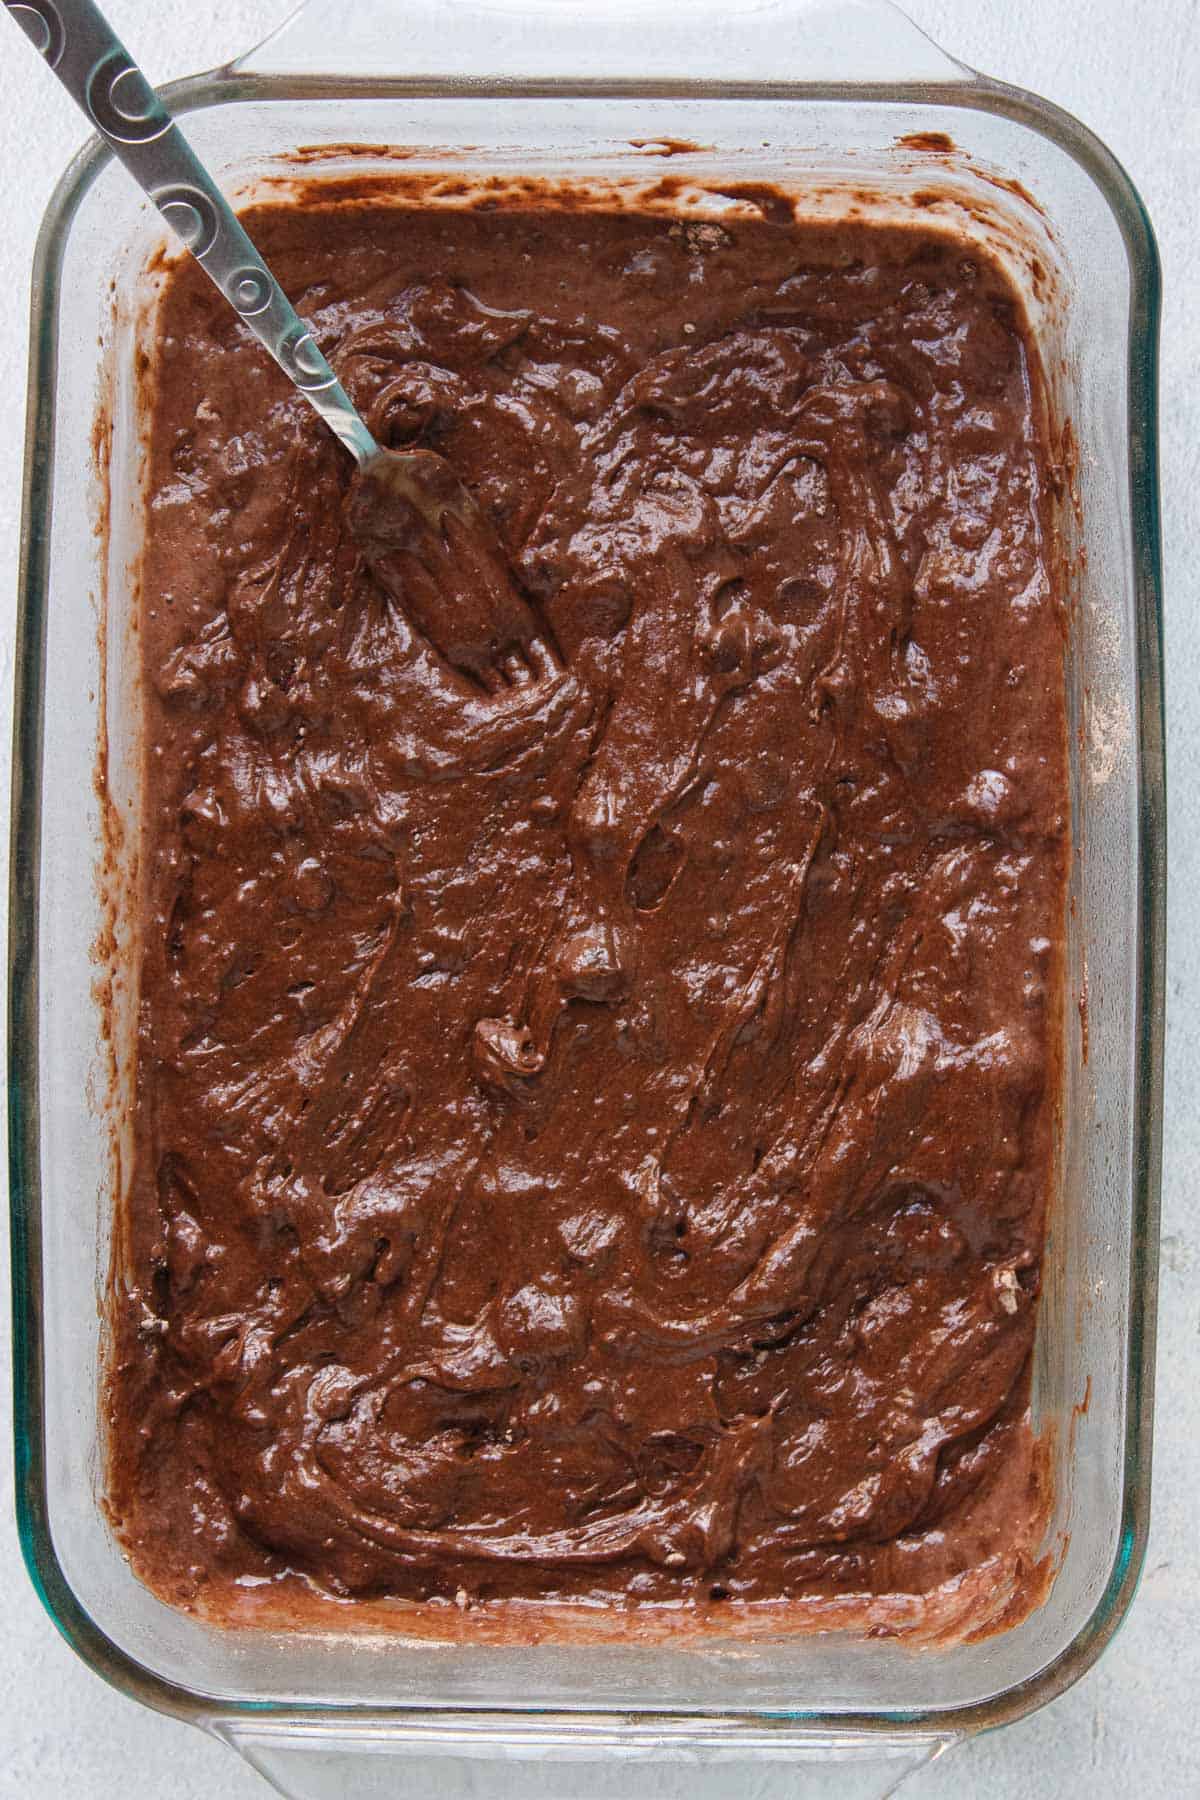 4-Ingredient Chocolate Dump Cake batter in a 9x13 baking dish